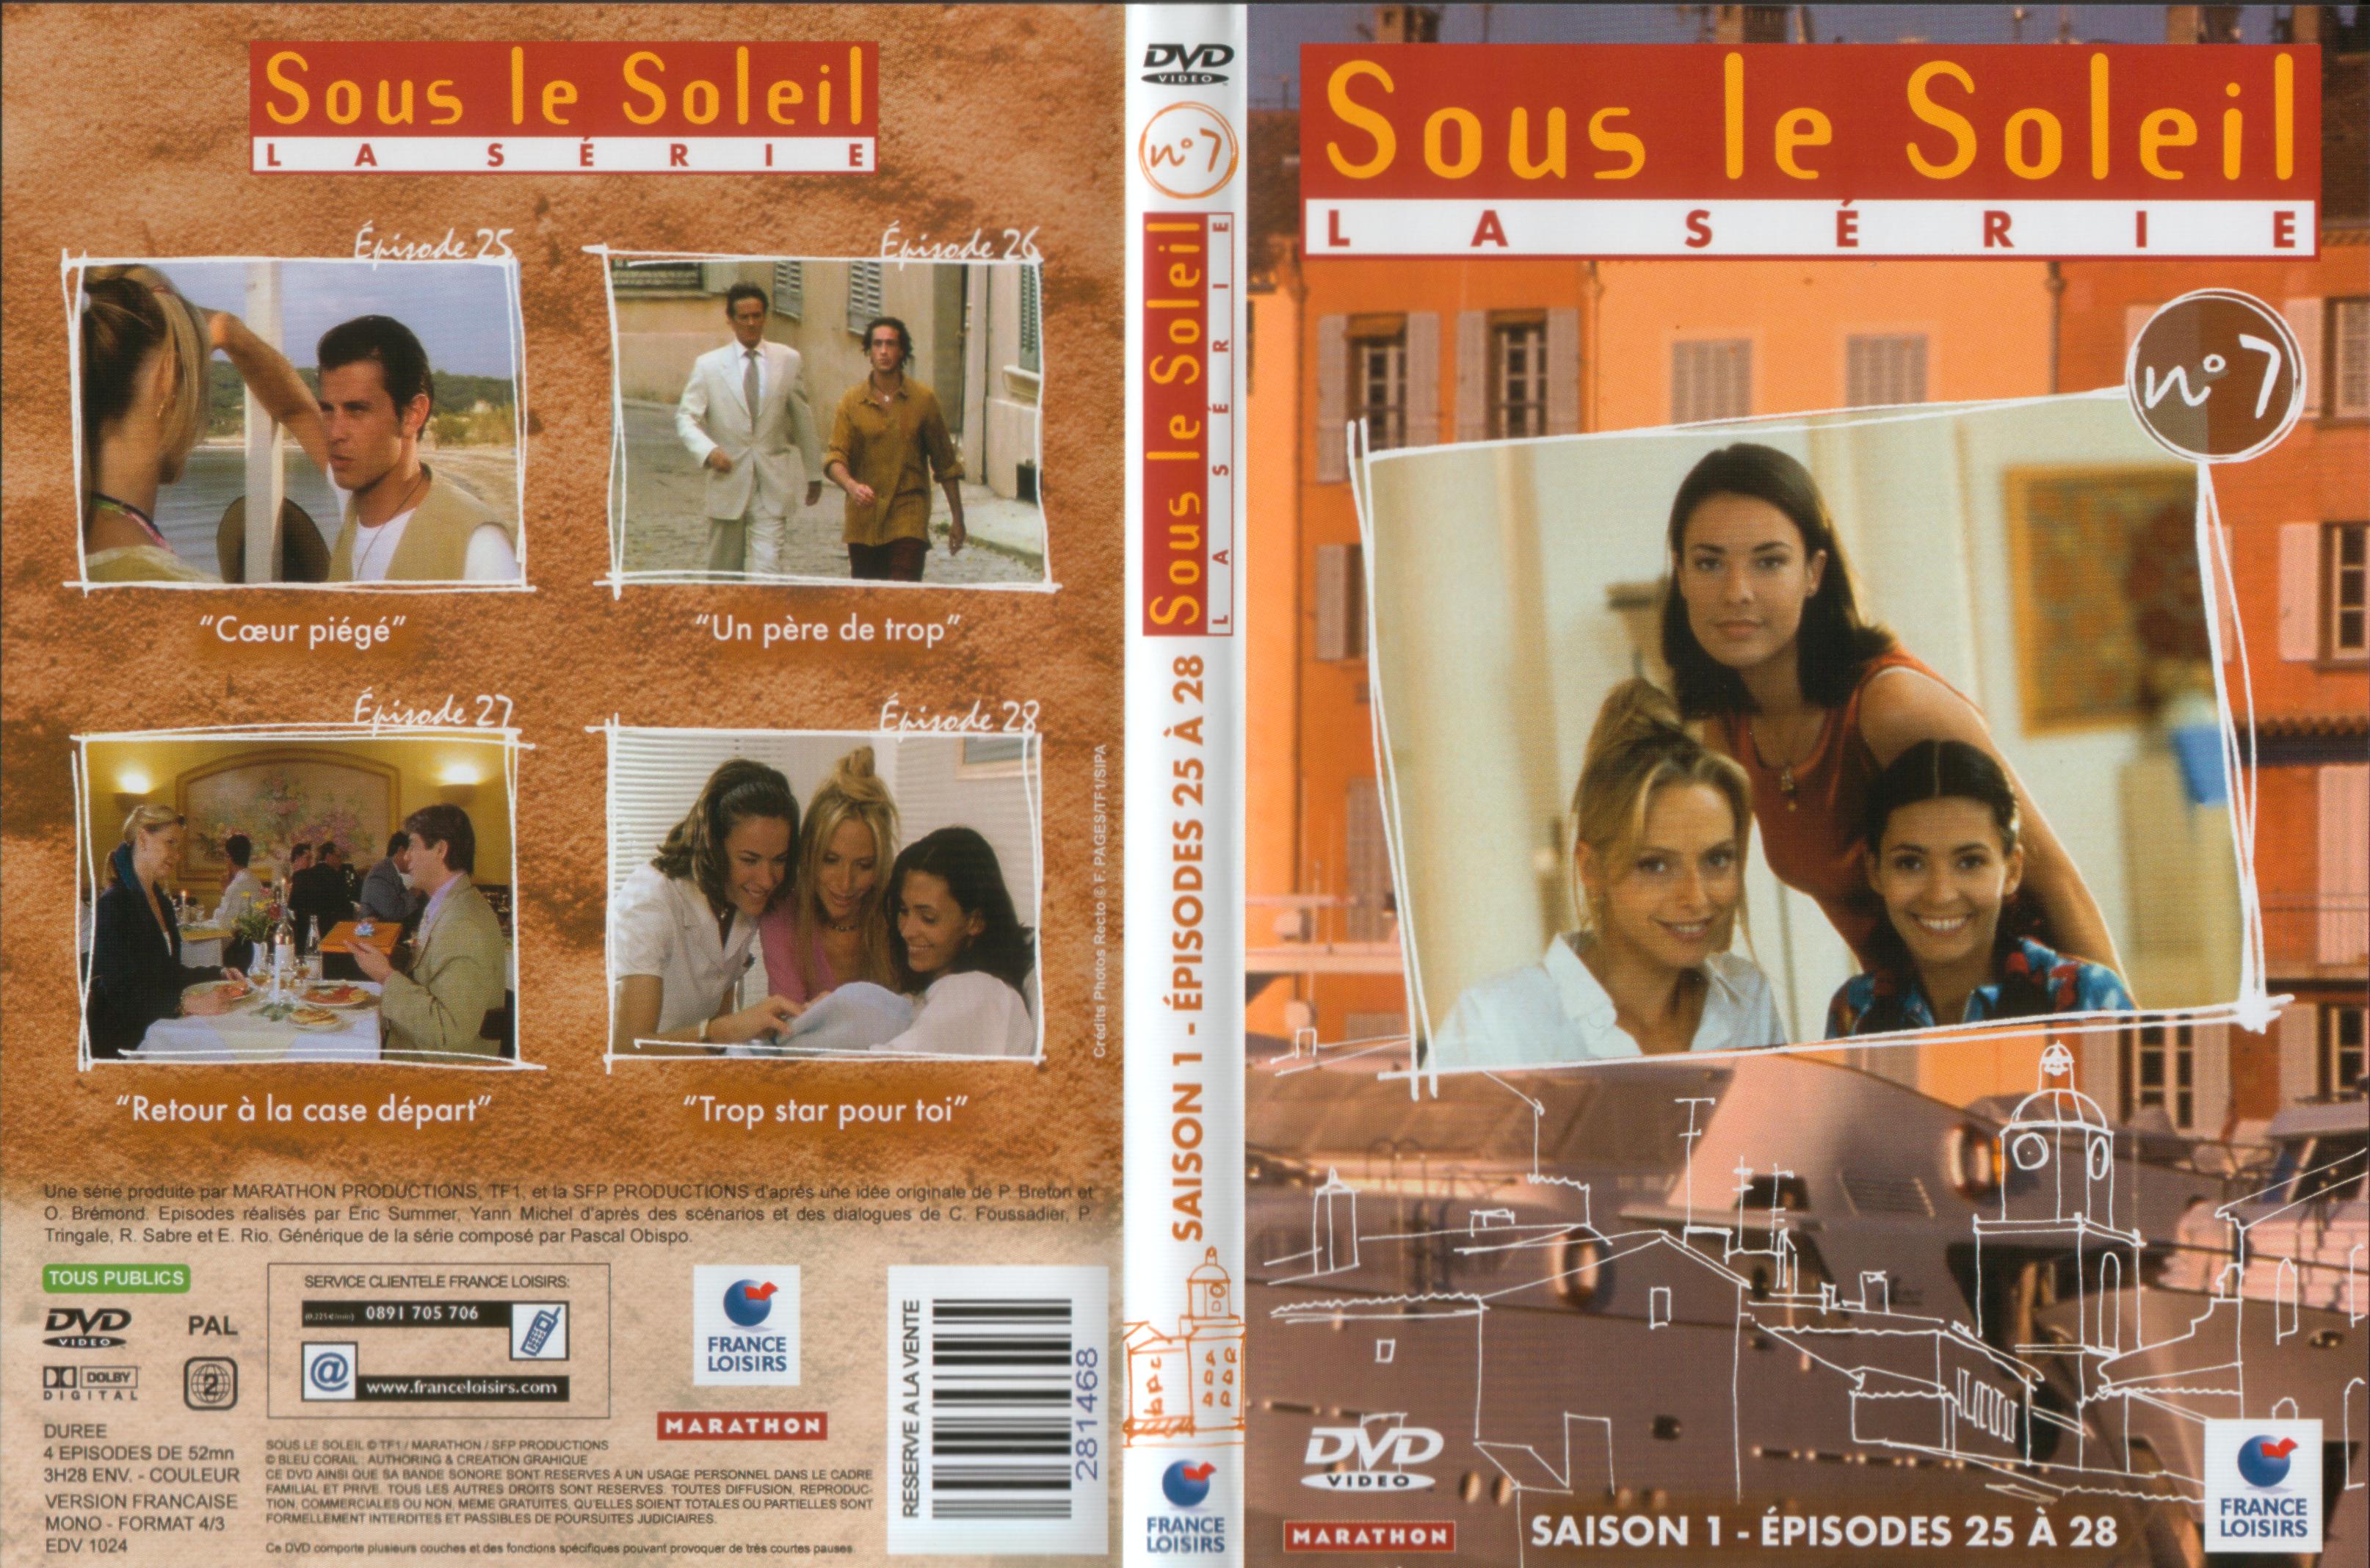 Jaquette DVD Sous le soleil saison 1 vol 7